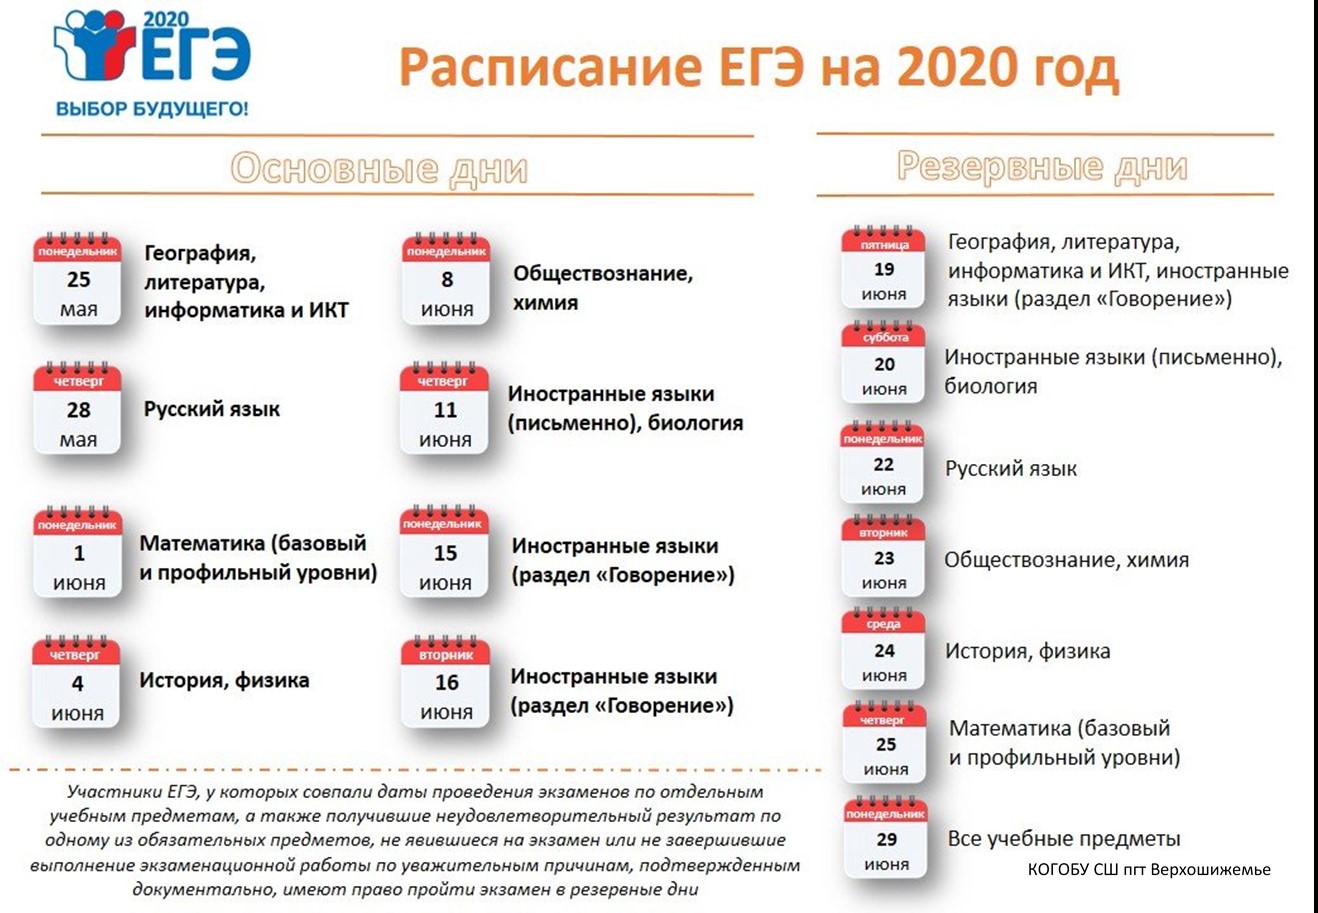 Экзамены в феврале 2024. ЕГЭ 2020 даты проведения. Сроки проведения единого государственного экзамена в 2020 году. ЕГЭ 2020 расписание экзаменов. Резервные даты ЕГЭ 2020.